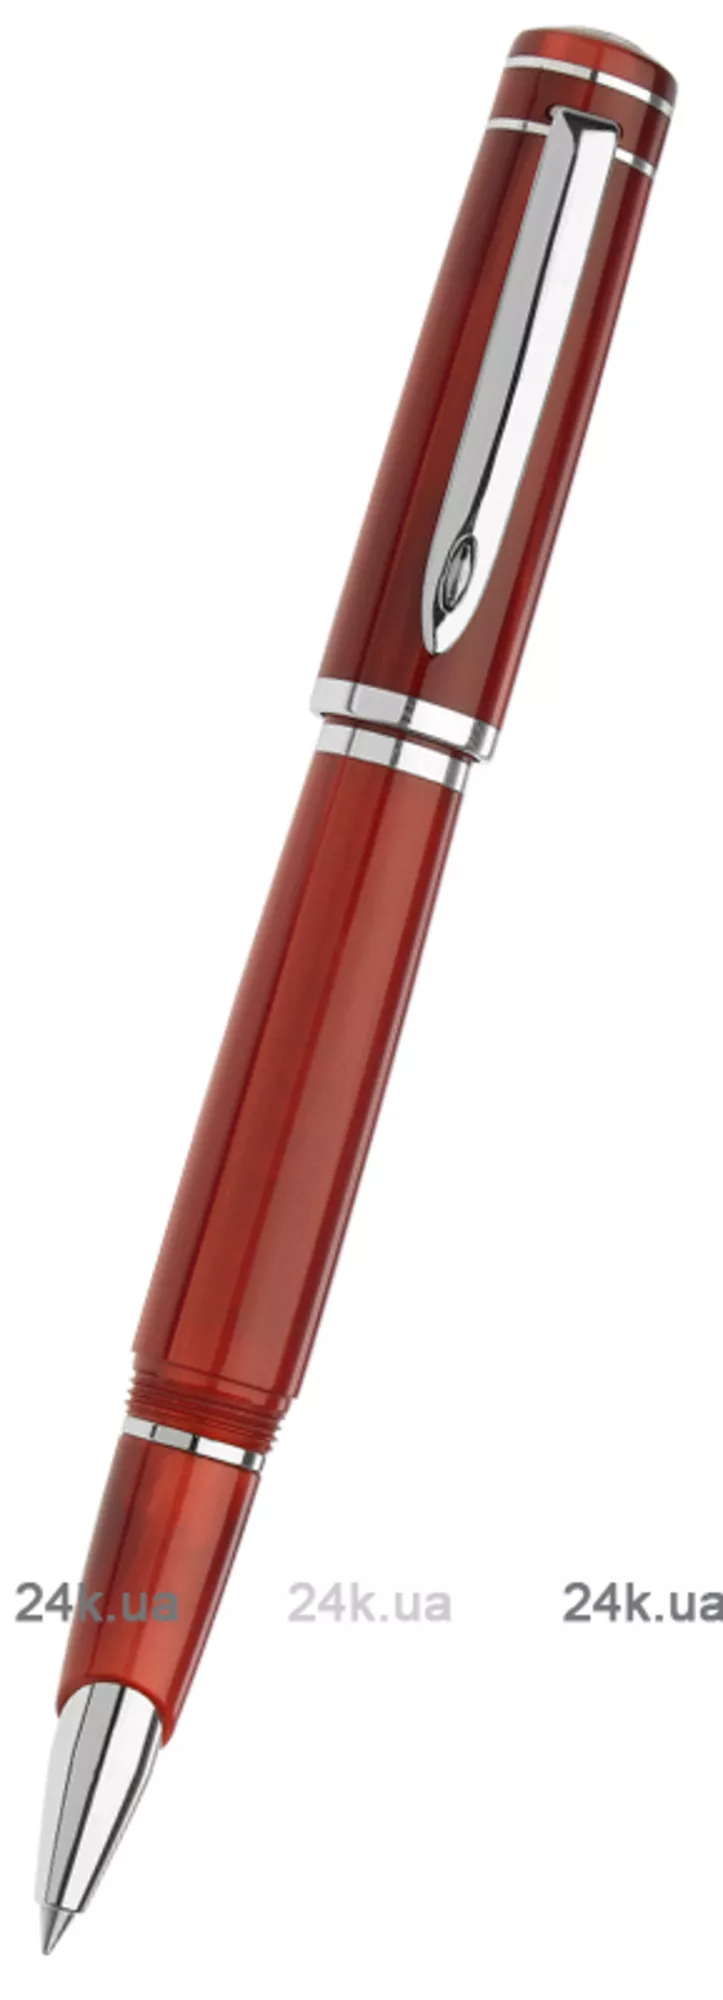 Ручка Marlen M12.117 RB Red